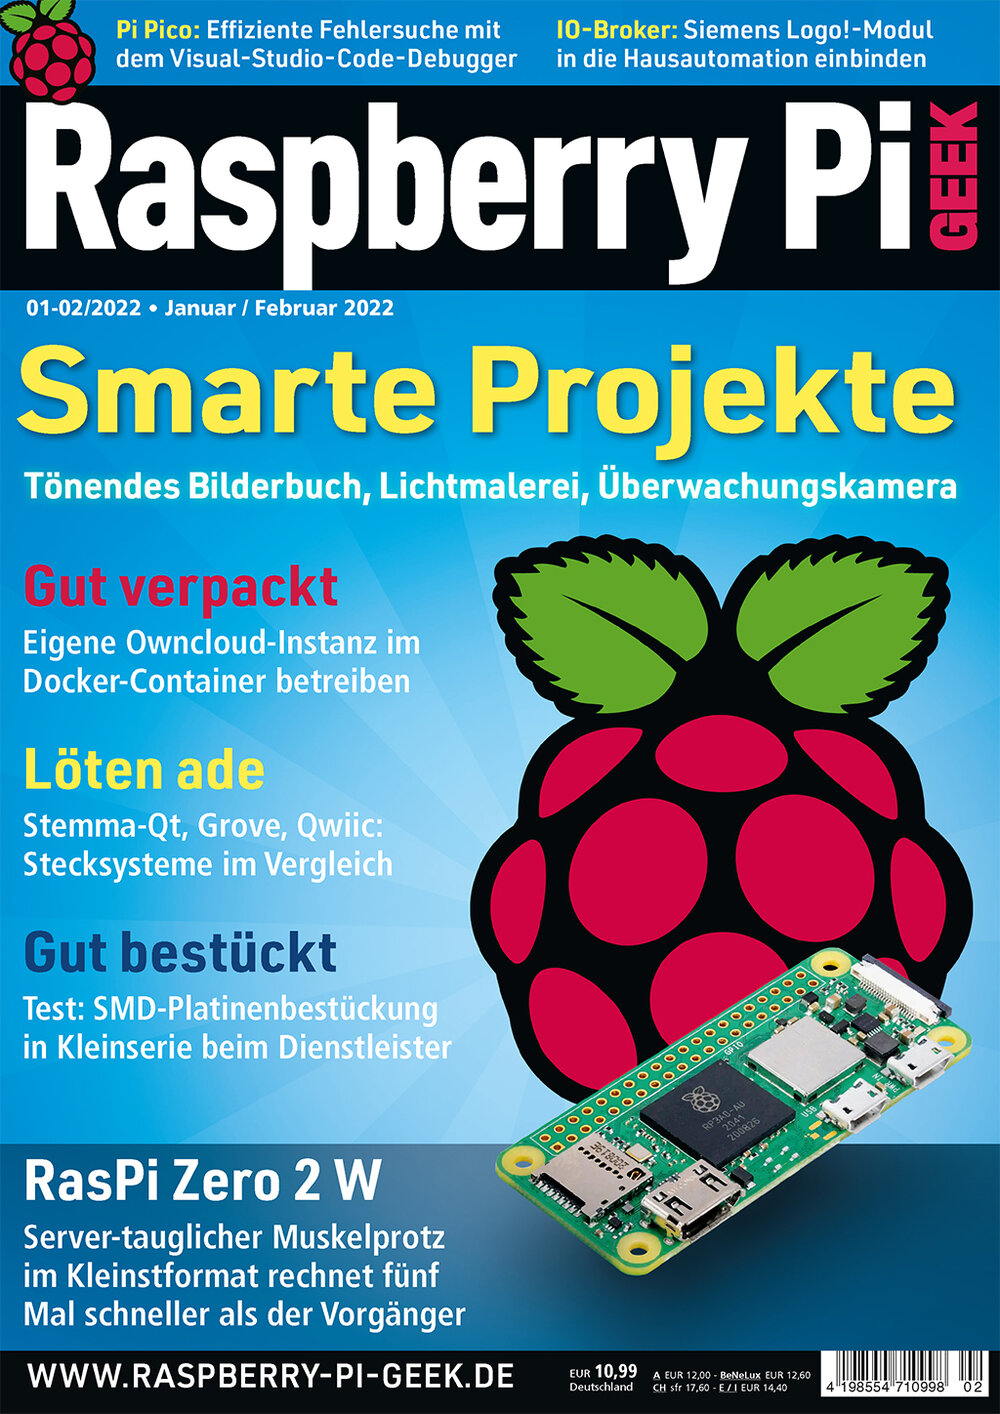 Raspberry Pi Geek 02/2022